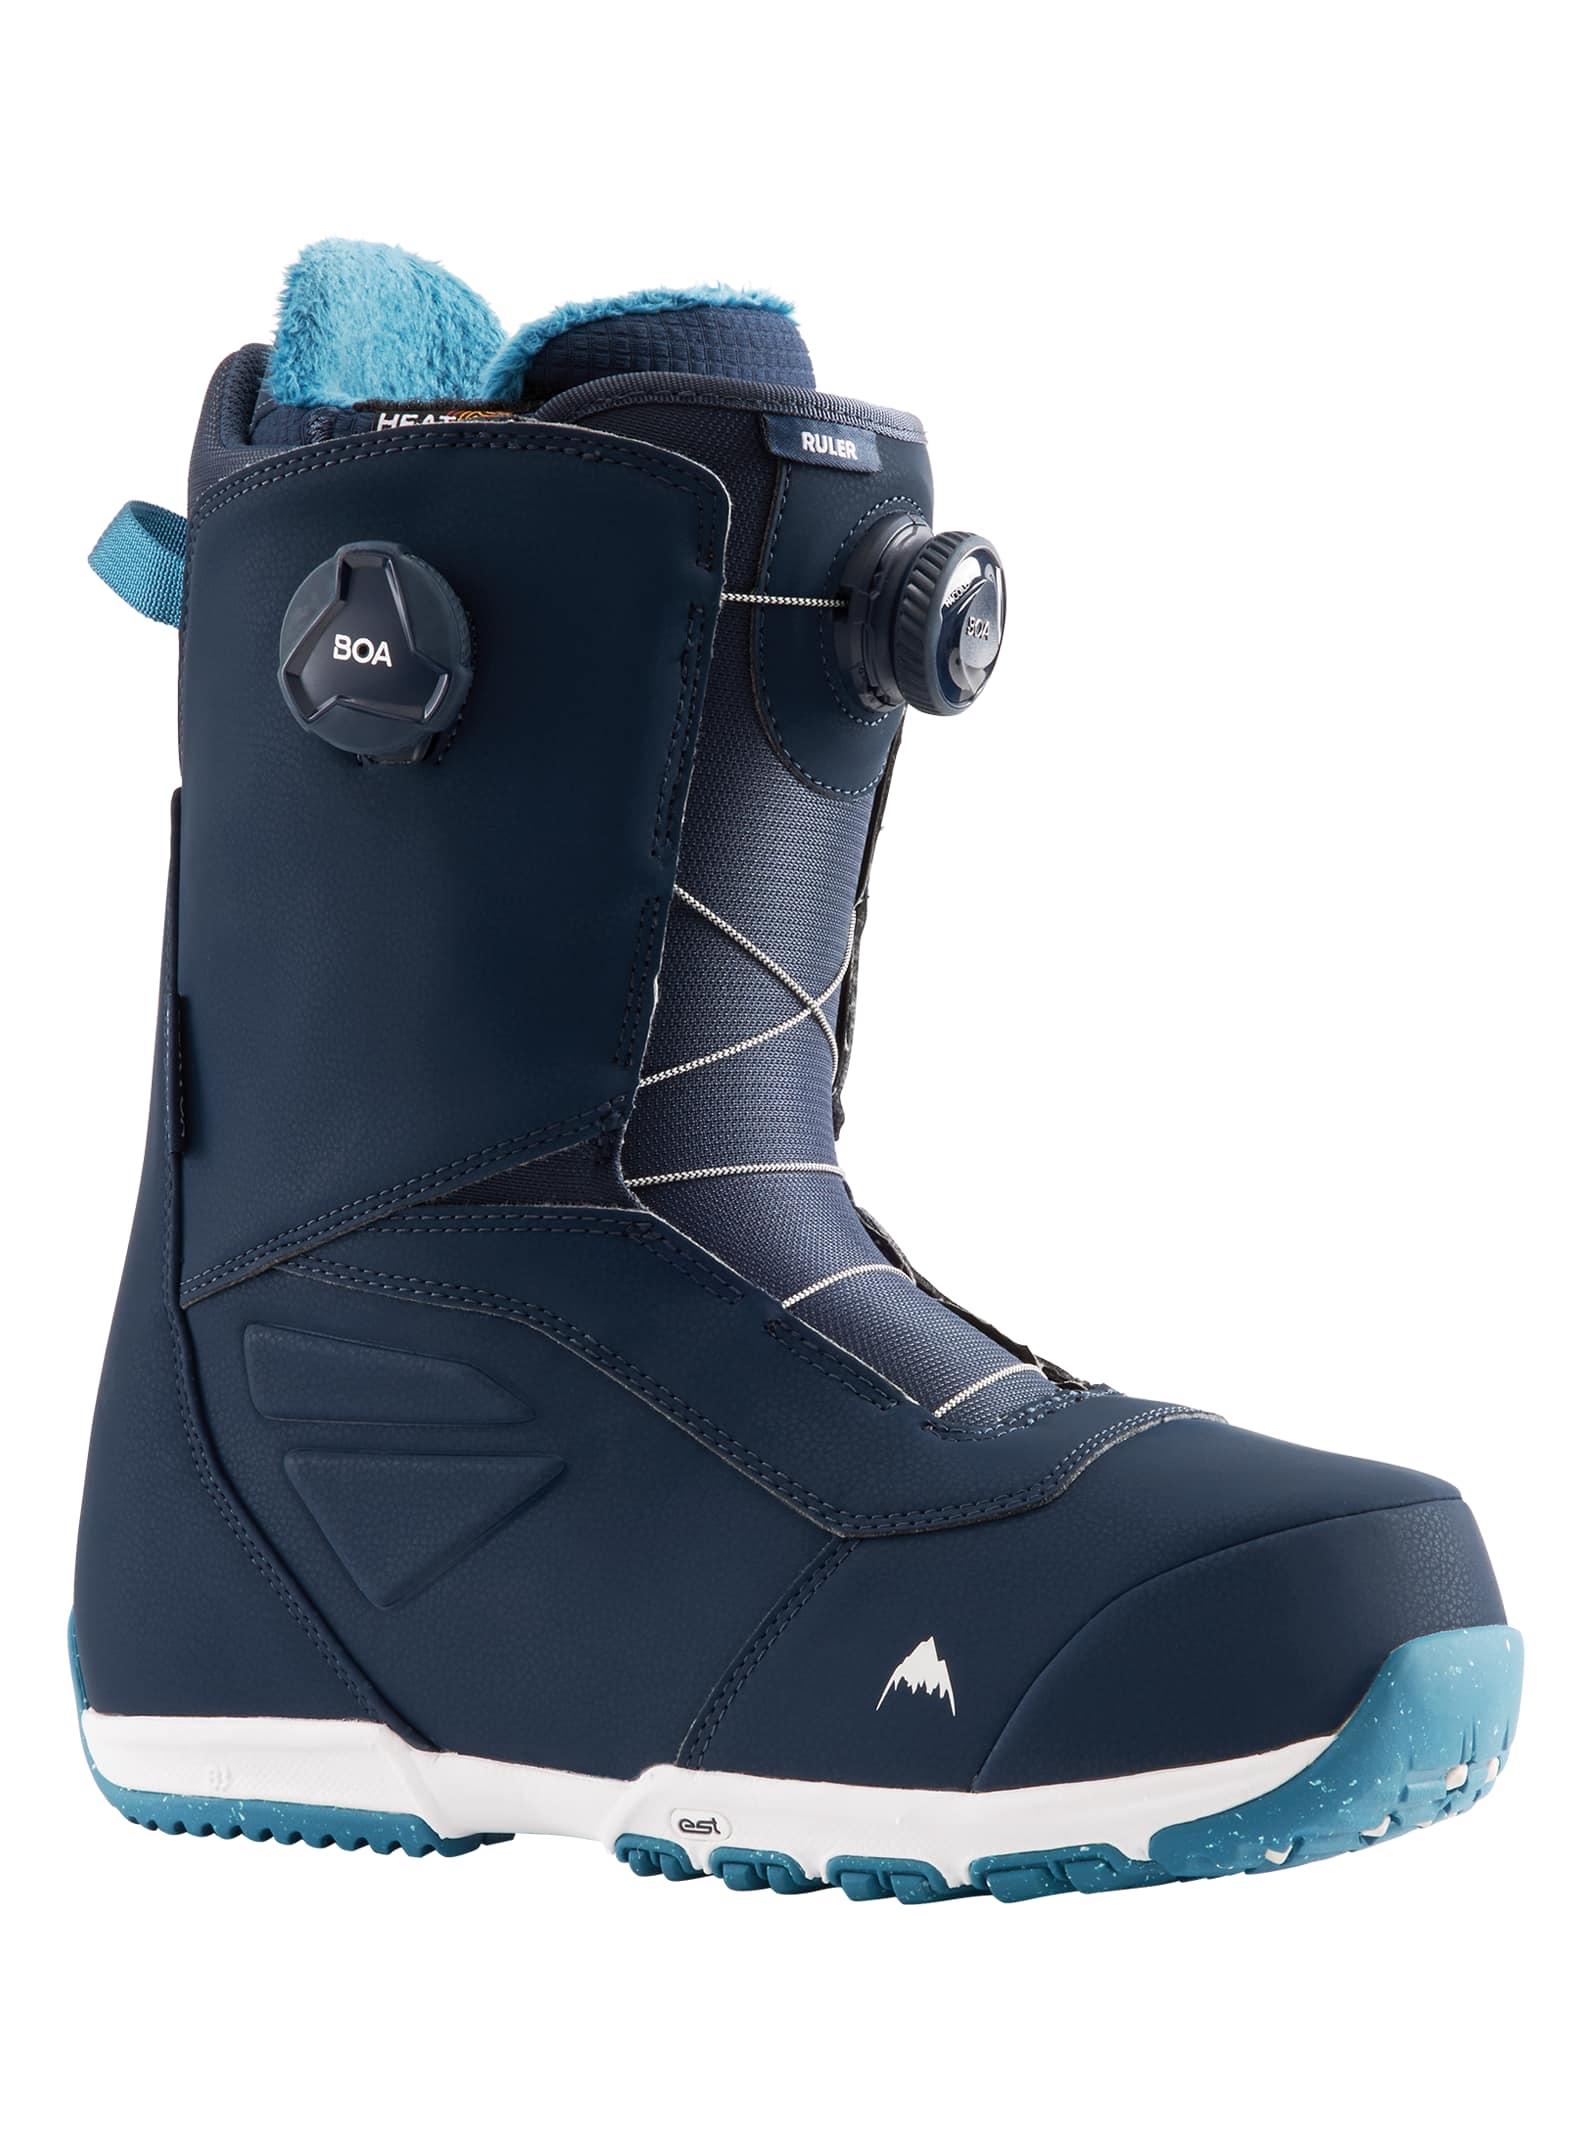 Winderig Beweegt niet verhaal Men's Burton Ruler BOA® Snowboard Boots | Burton.com Winter 2022 US